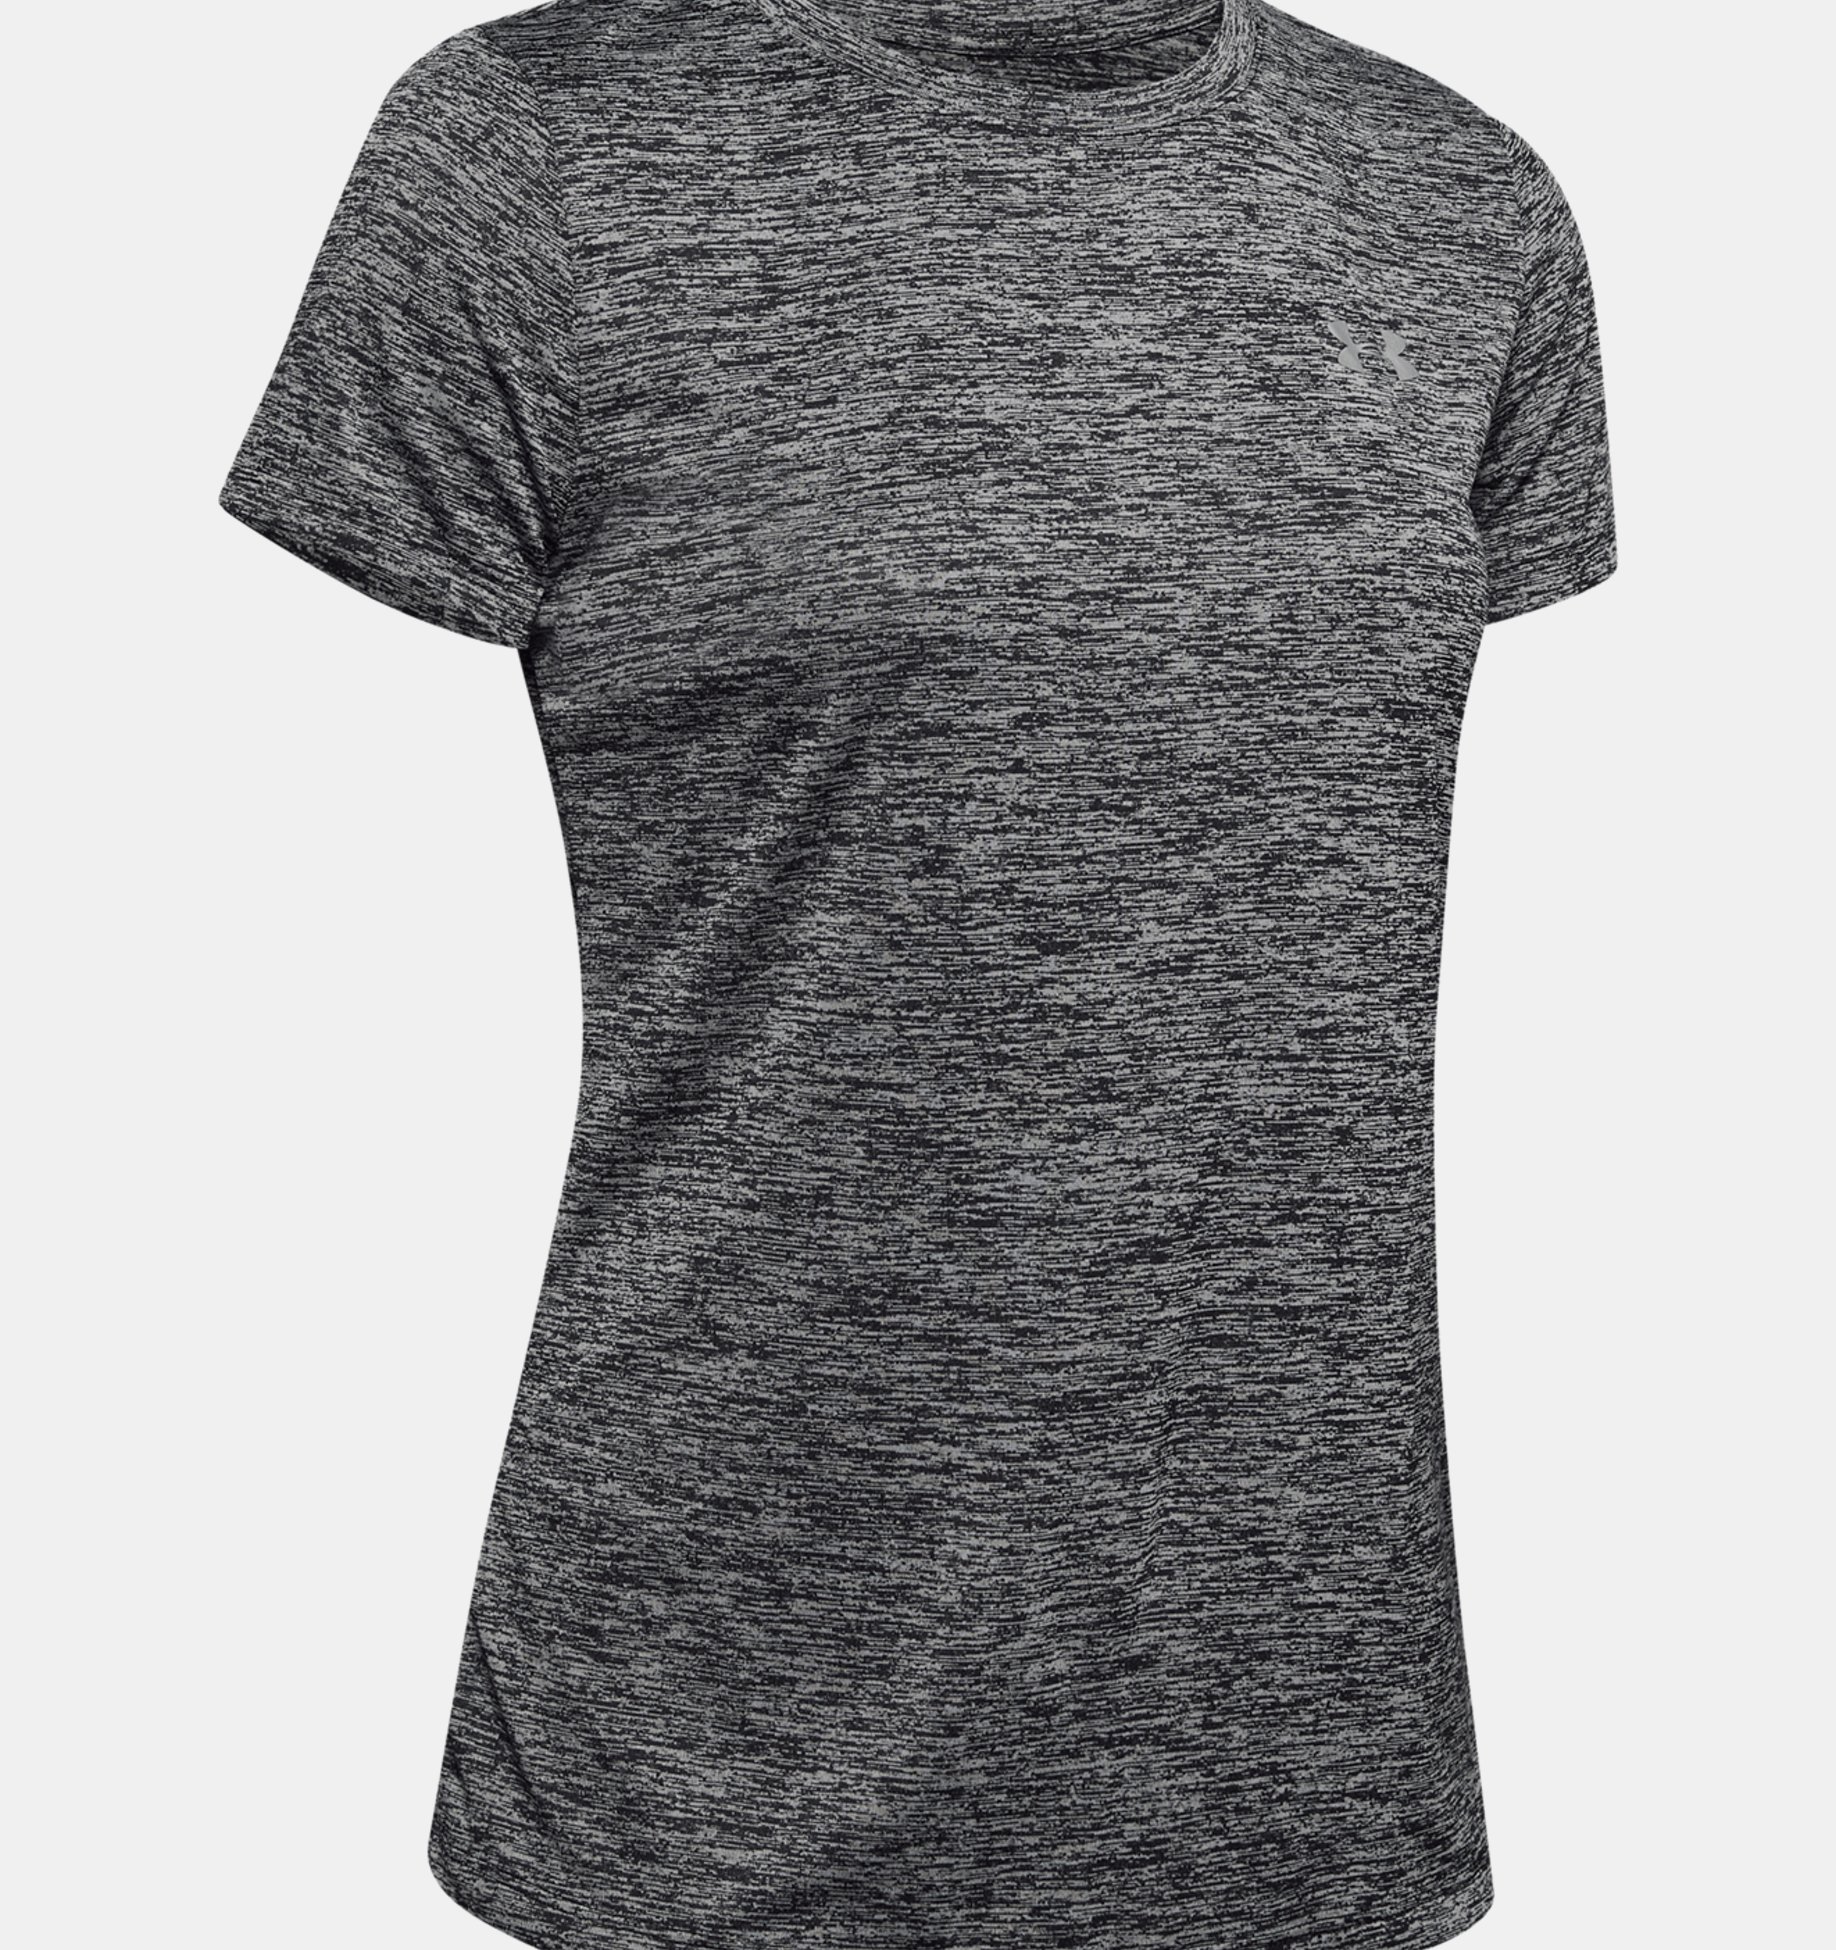 discount 72% WOMEN FASHION Shirts & T-shirts Casual Amisu T-shirt Gray XS 